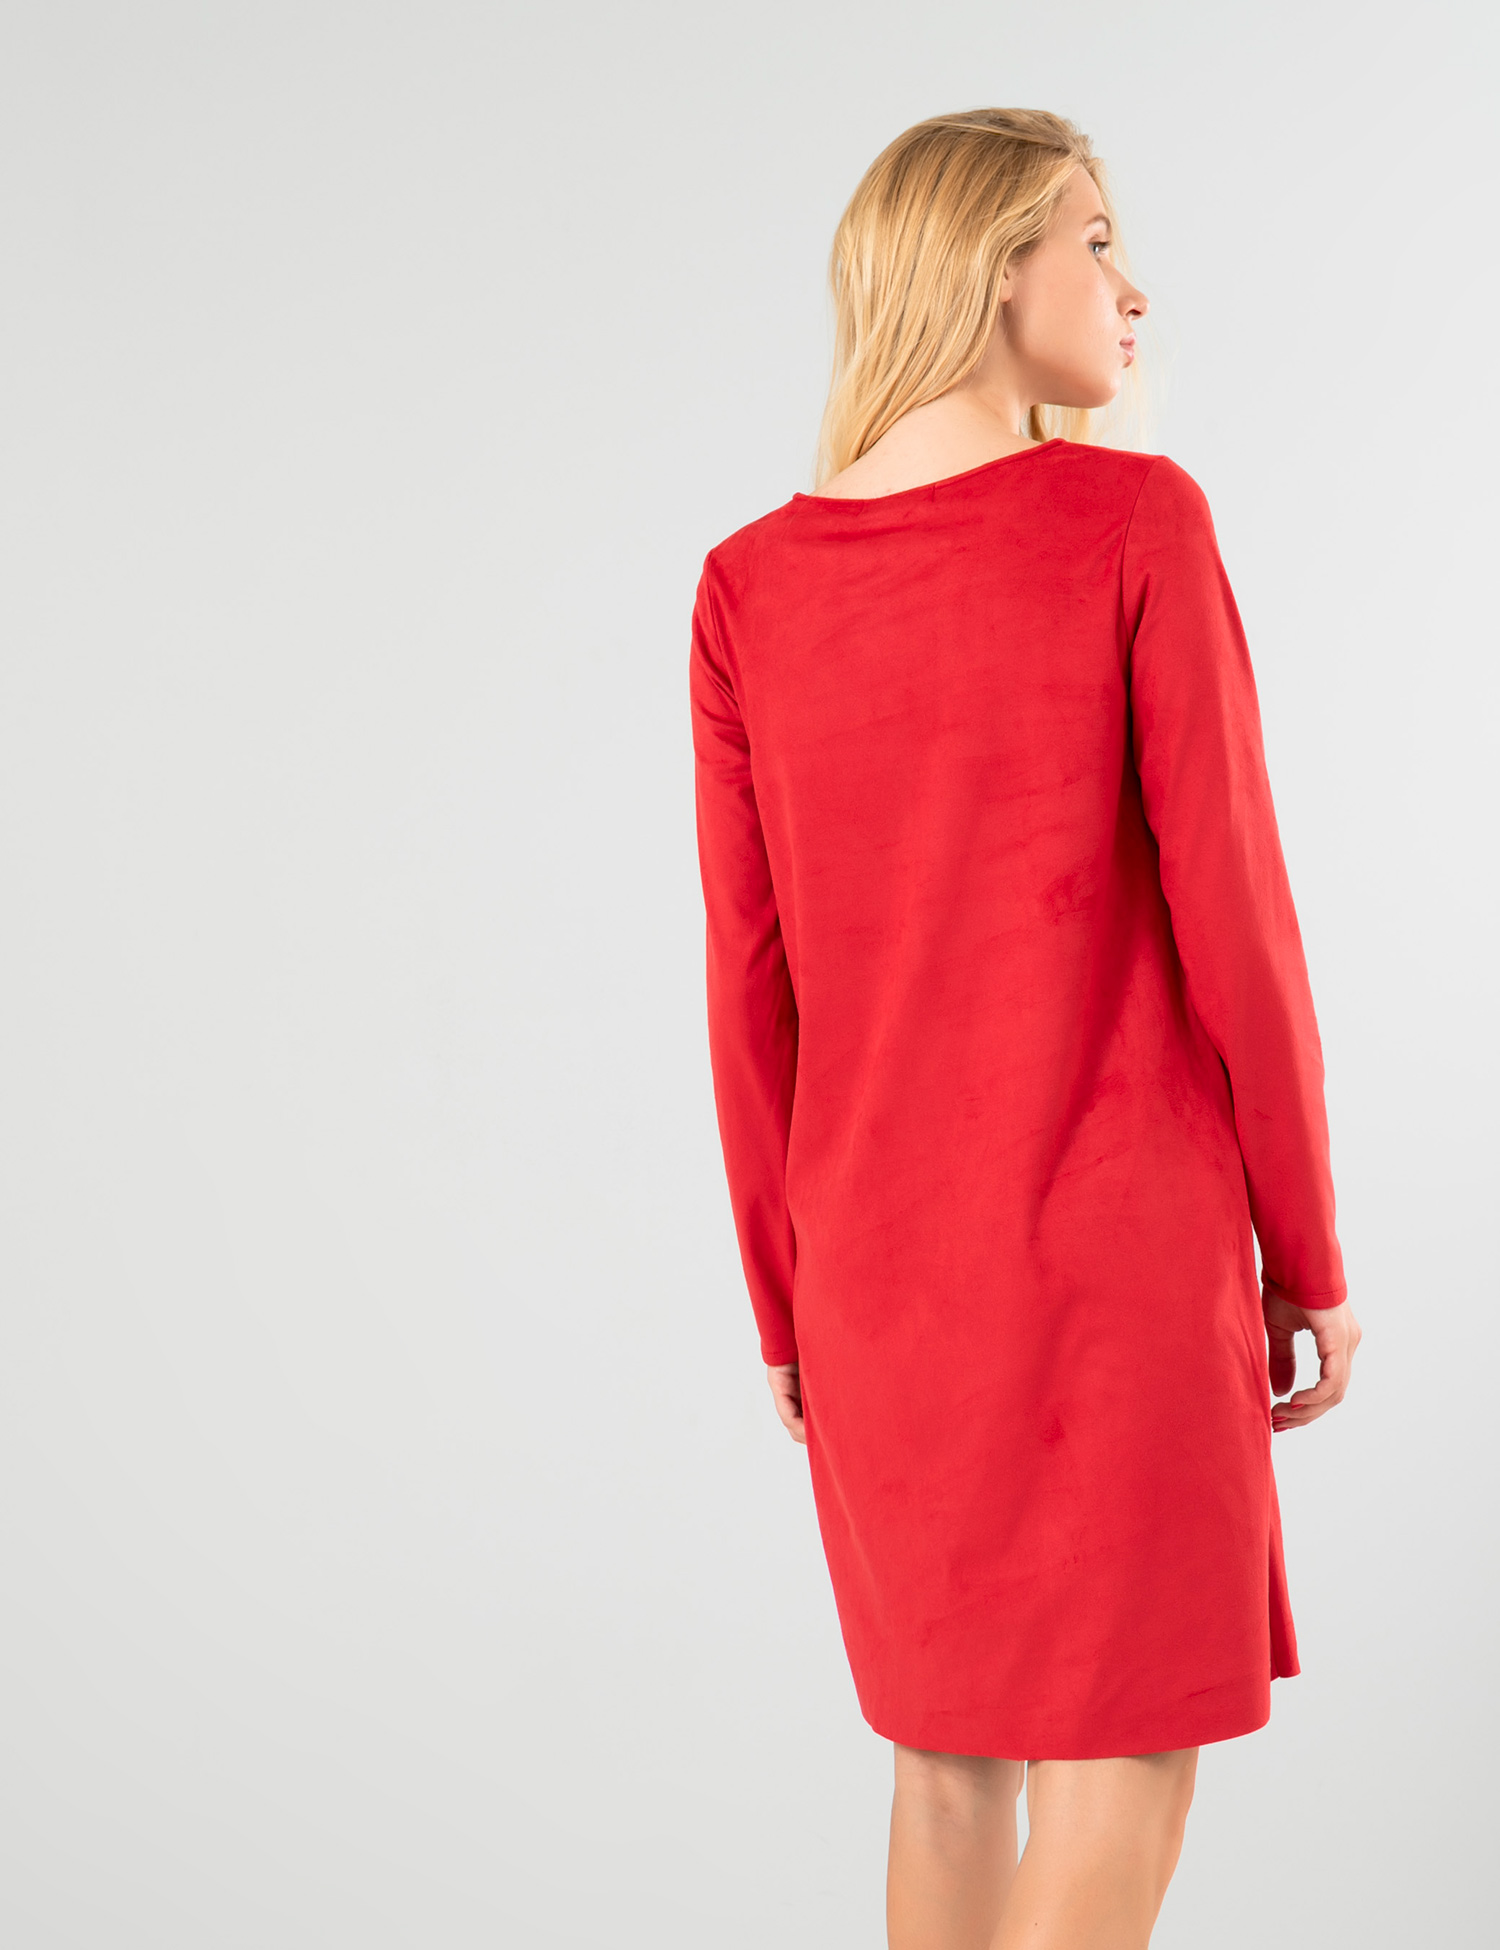 Картинка Червона сукня